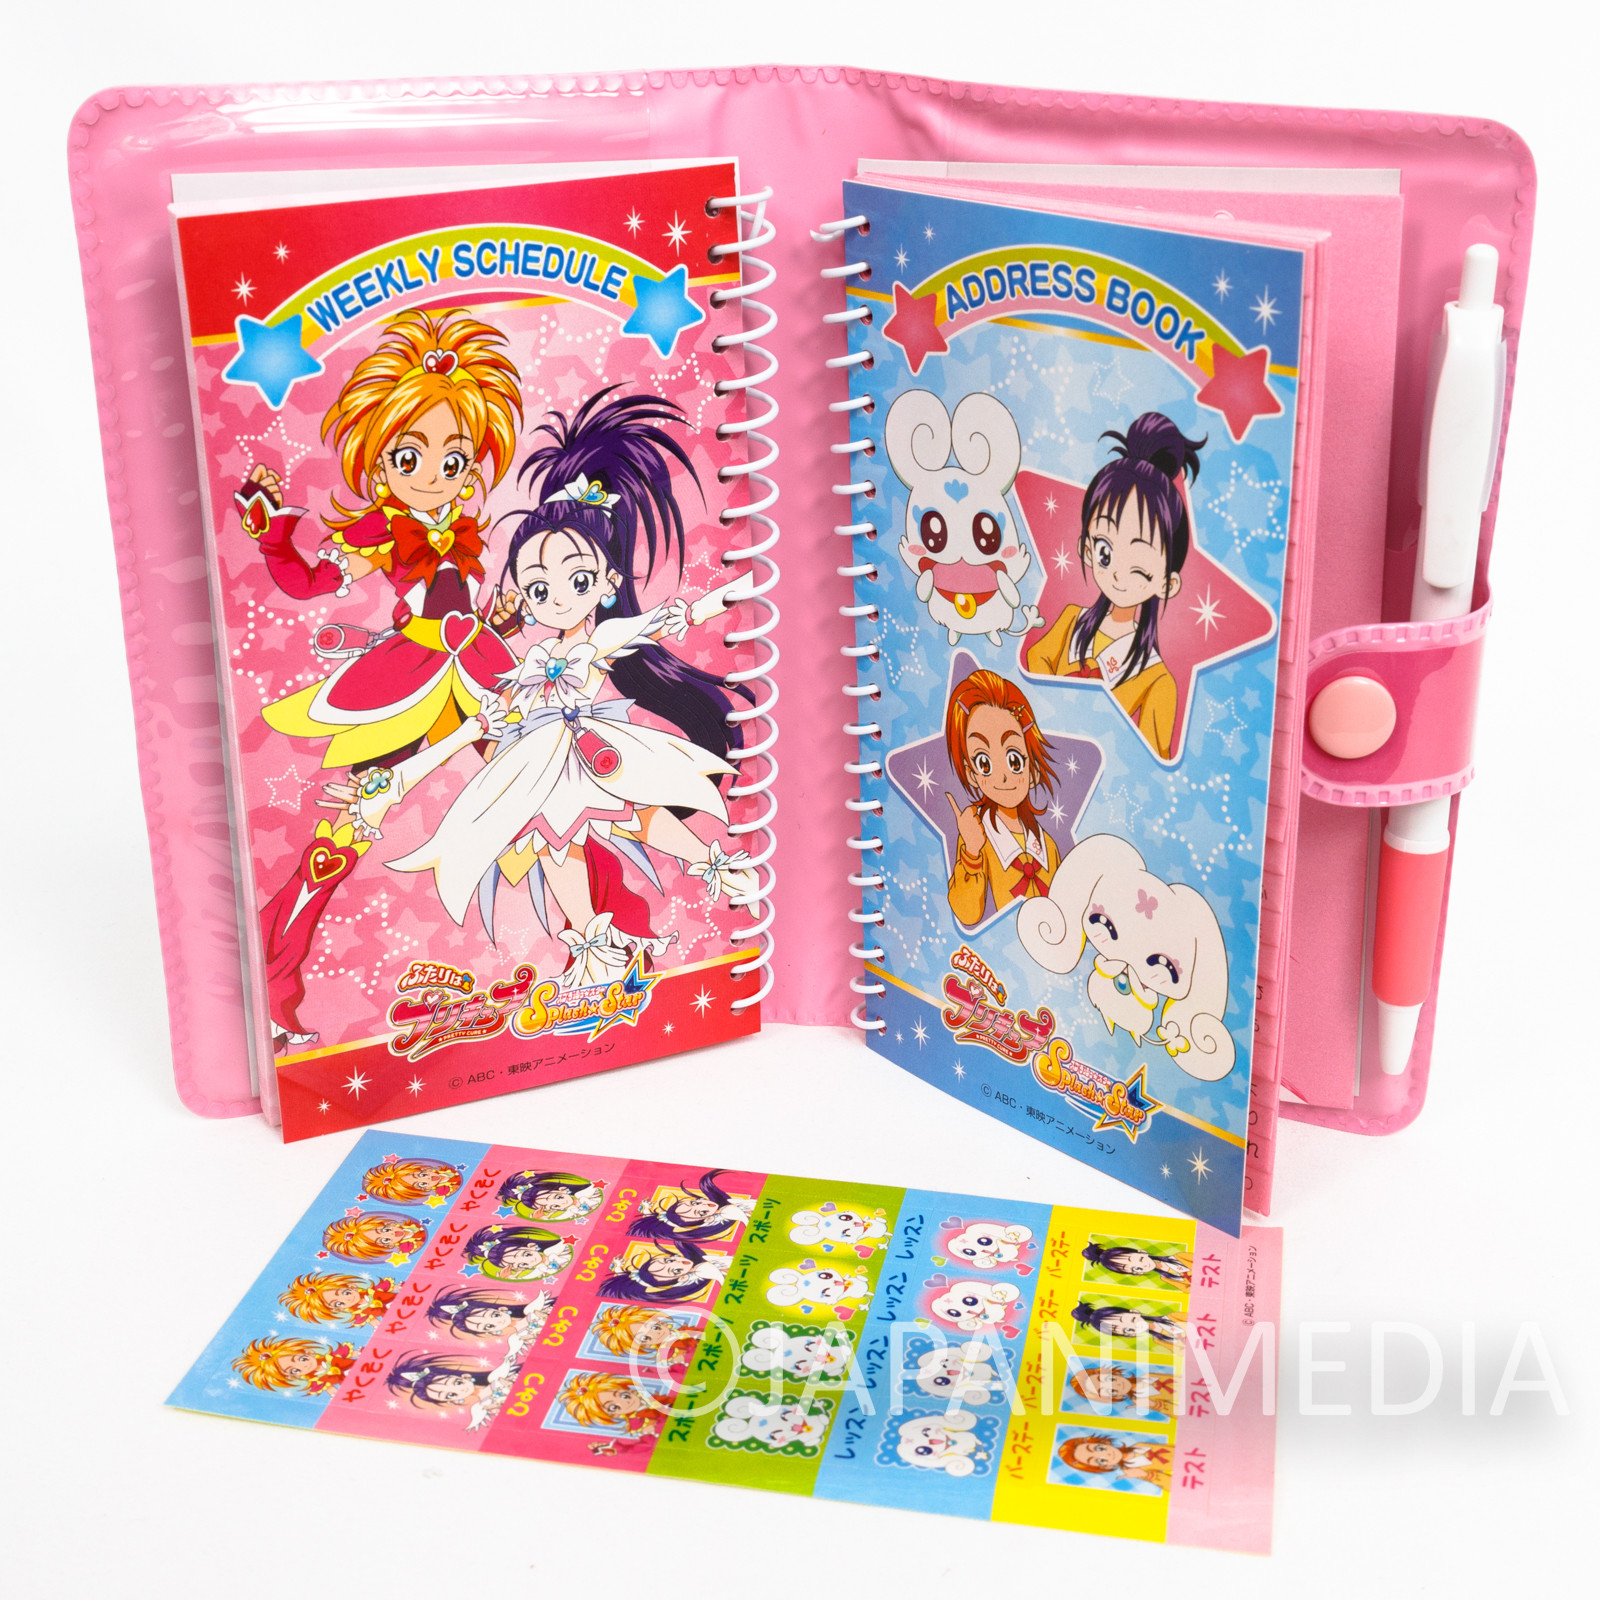 Futari wa Pretty Cure Splash Star Schedule Book w/ Stickers SEIKA NOTE